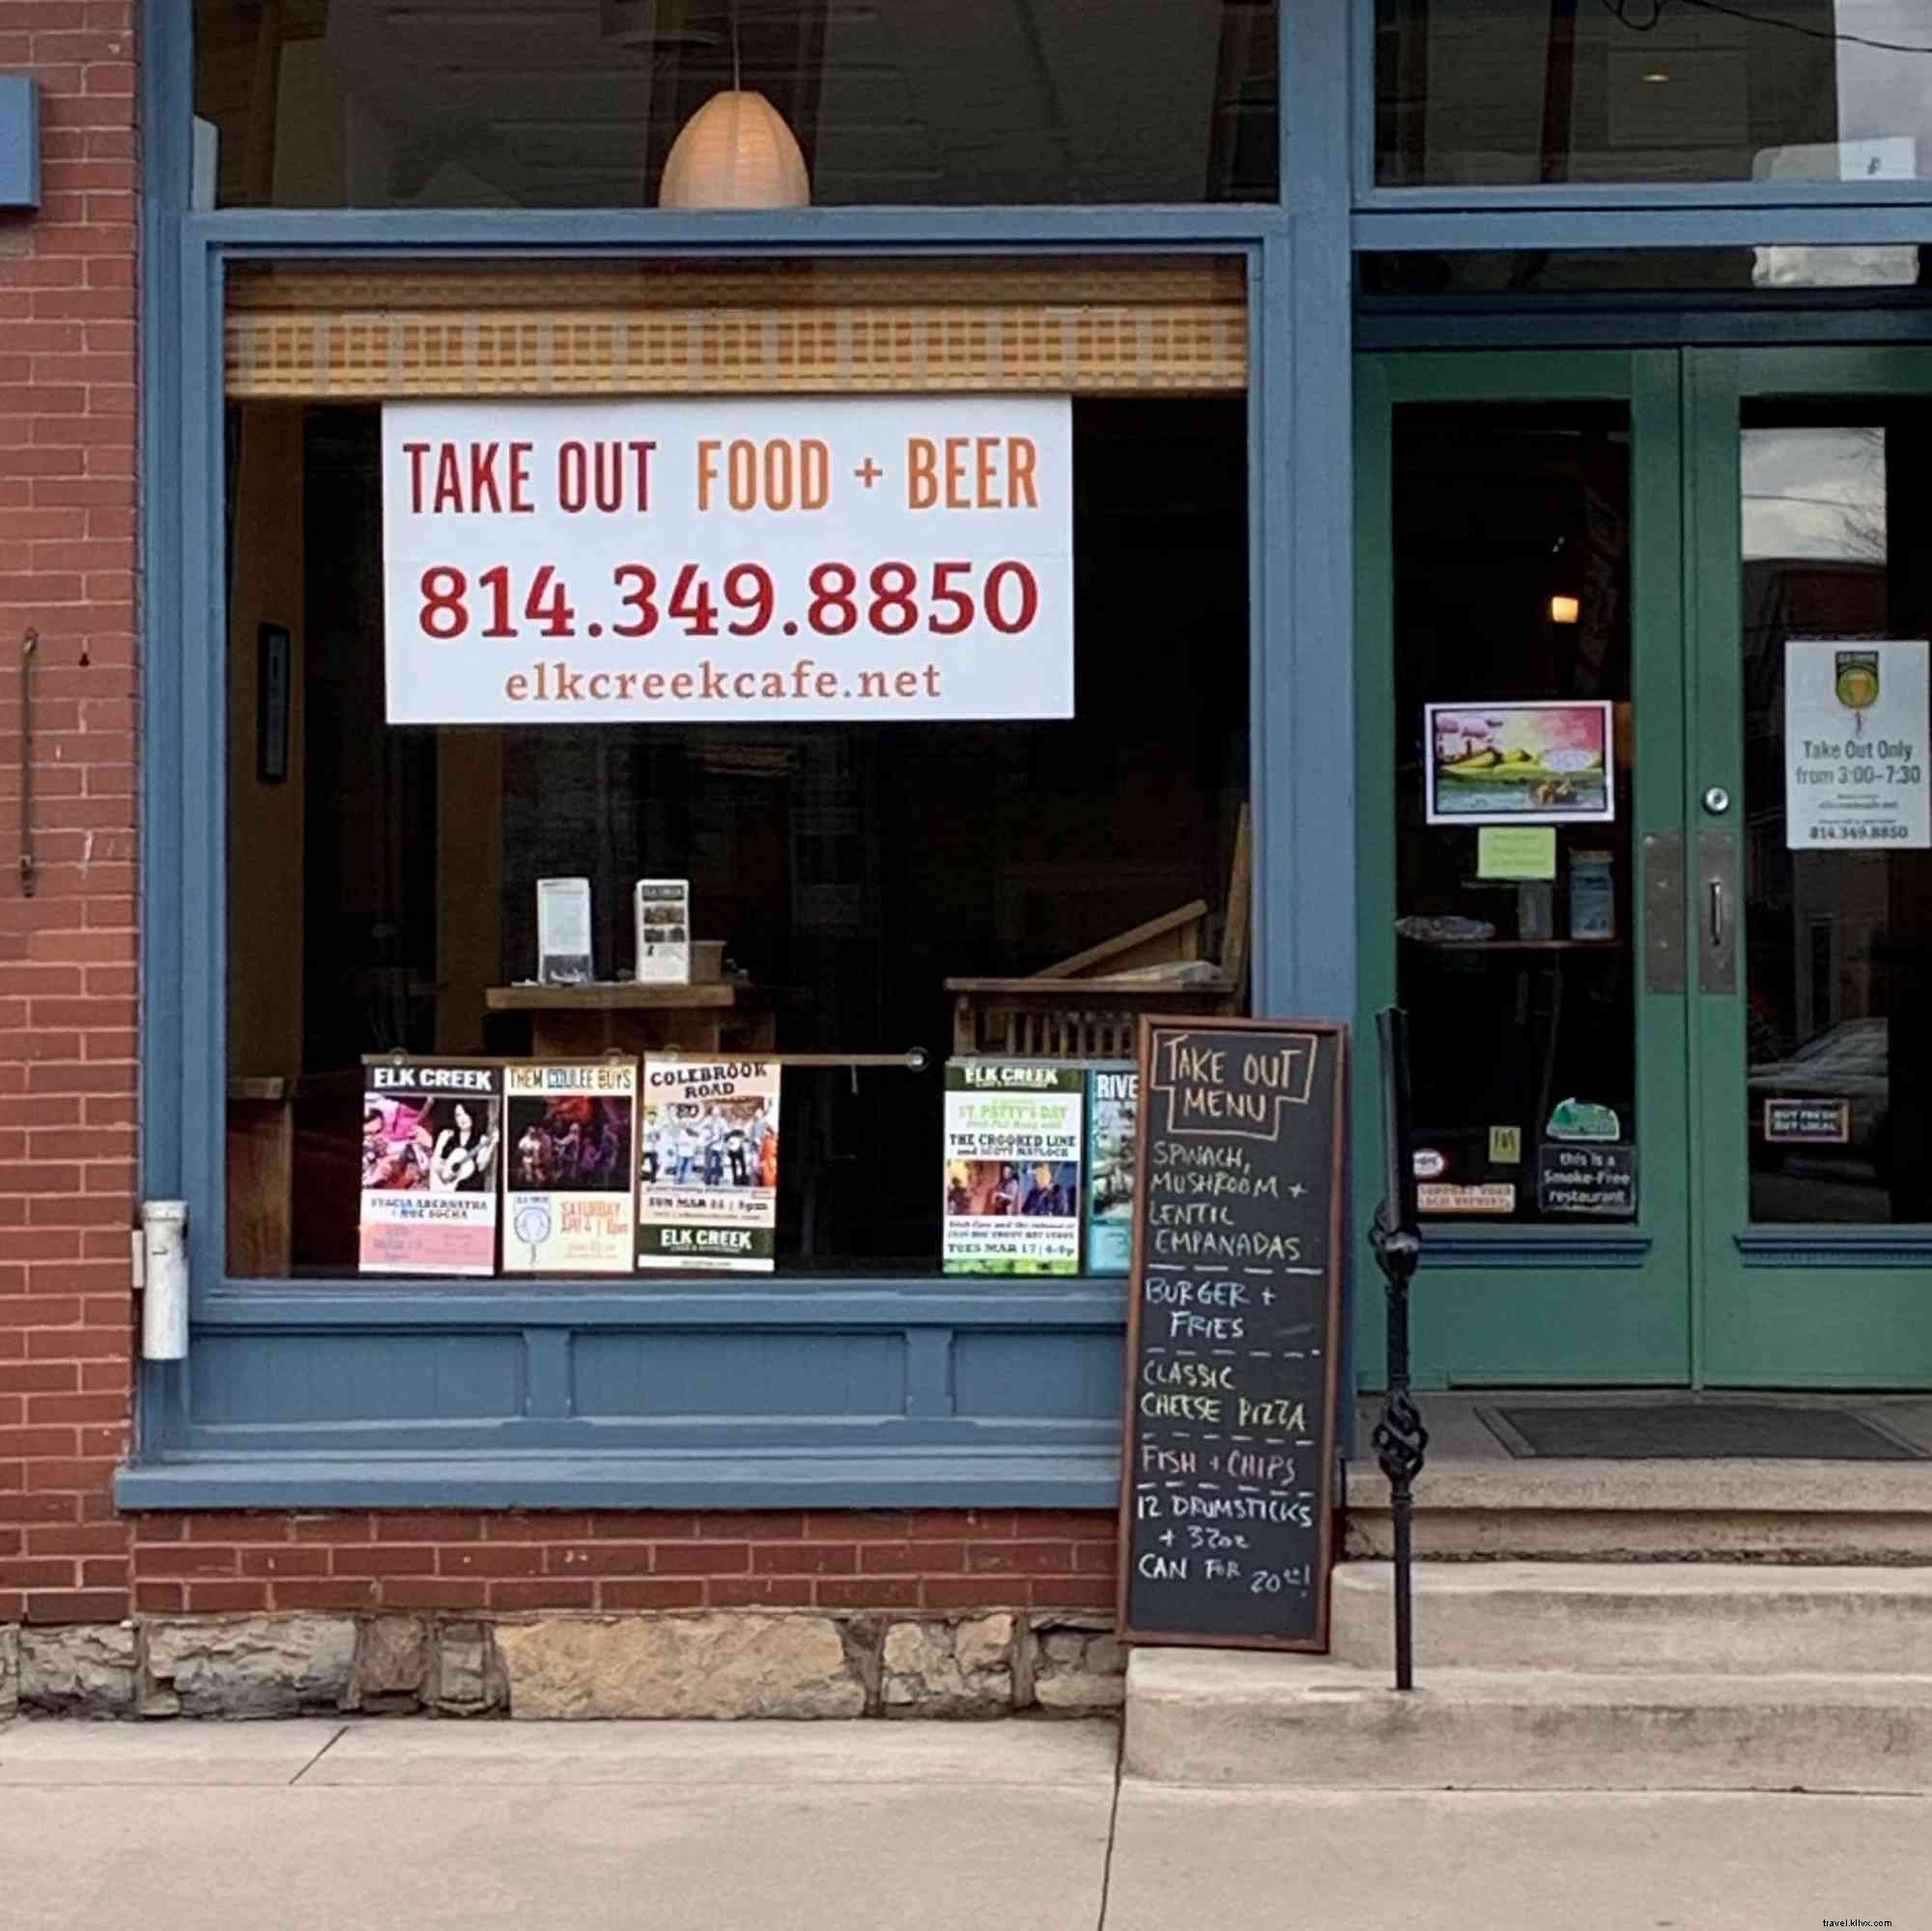 lk Creek Café pivote pour vendre des bières et de la nourriture à partir de plusieurs endroits 